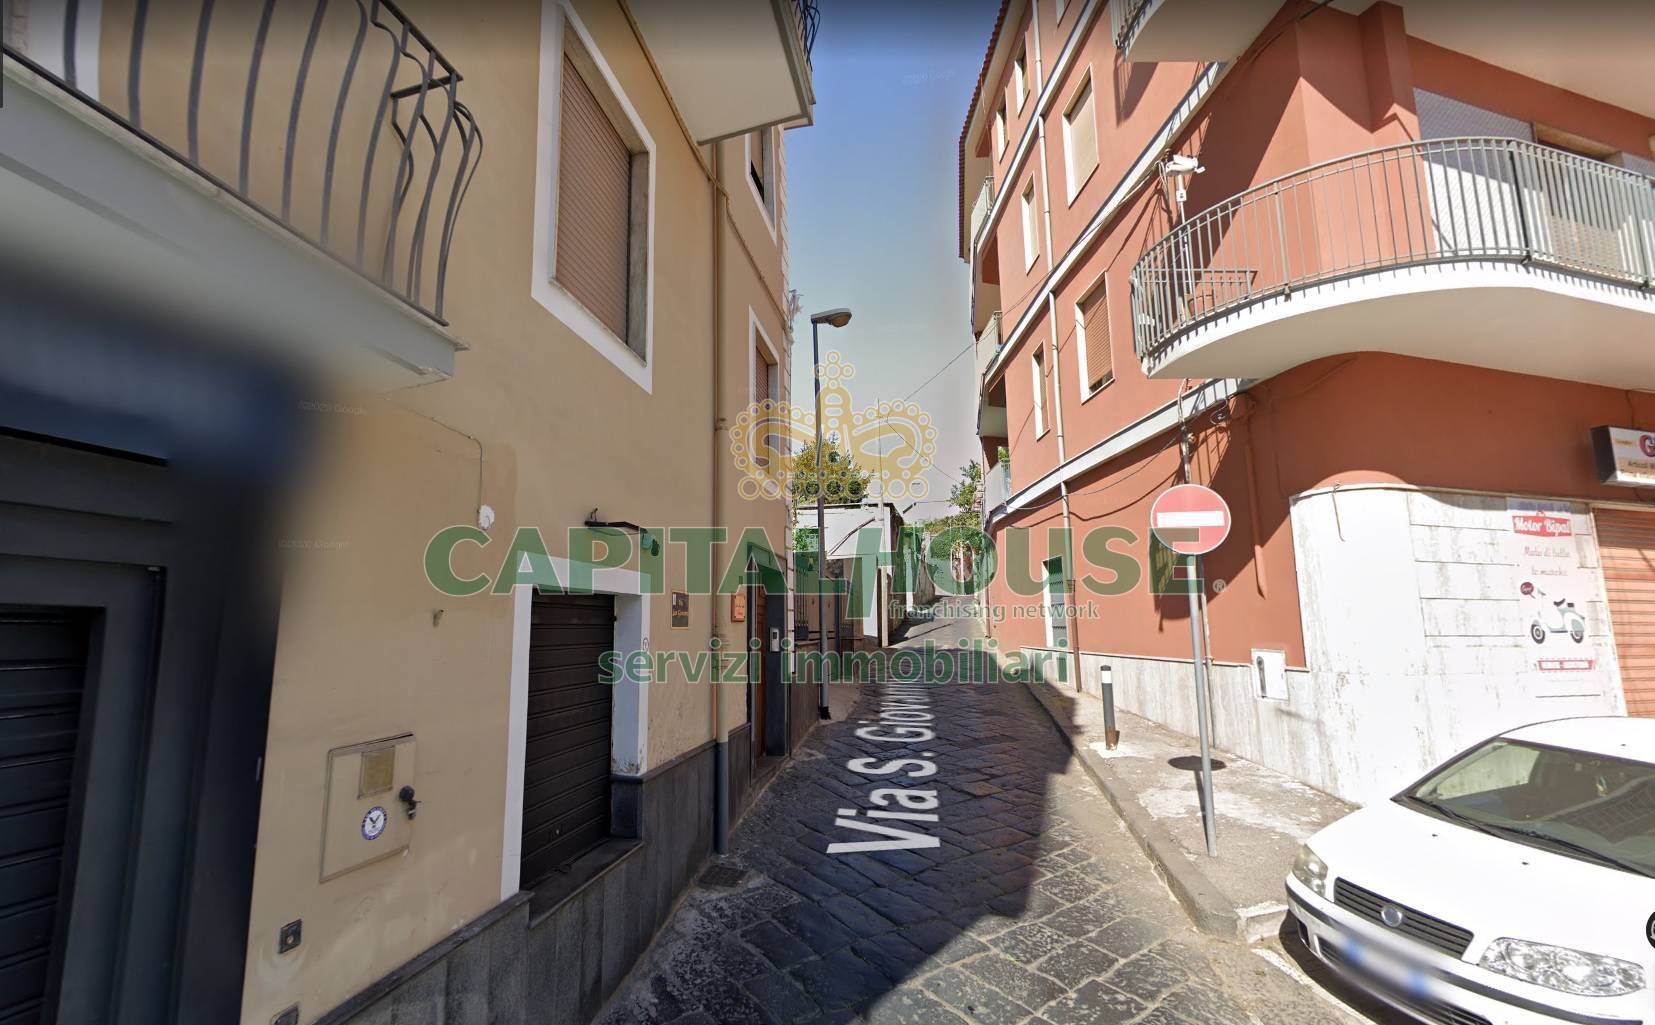 Appartamento in affitto a Ottaviano, 2 locali, prezzo € 250 | CambioCasa.it